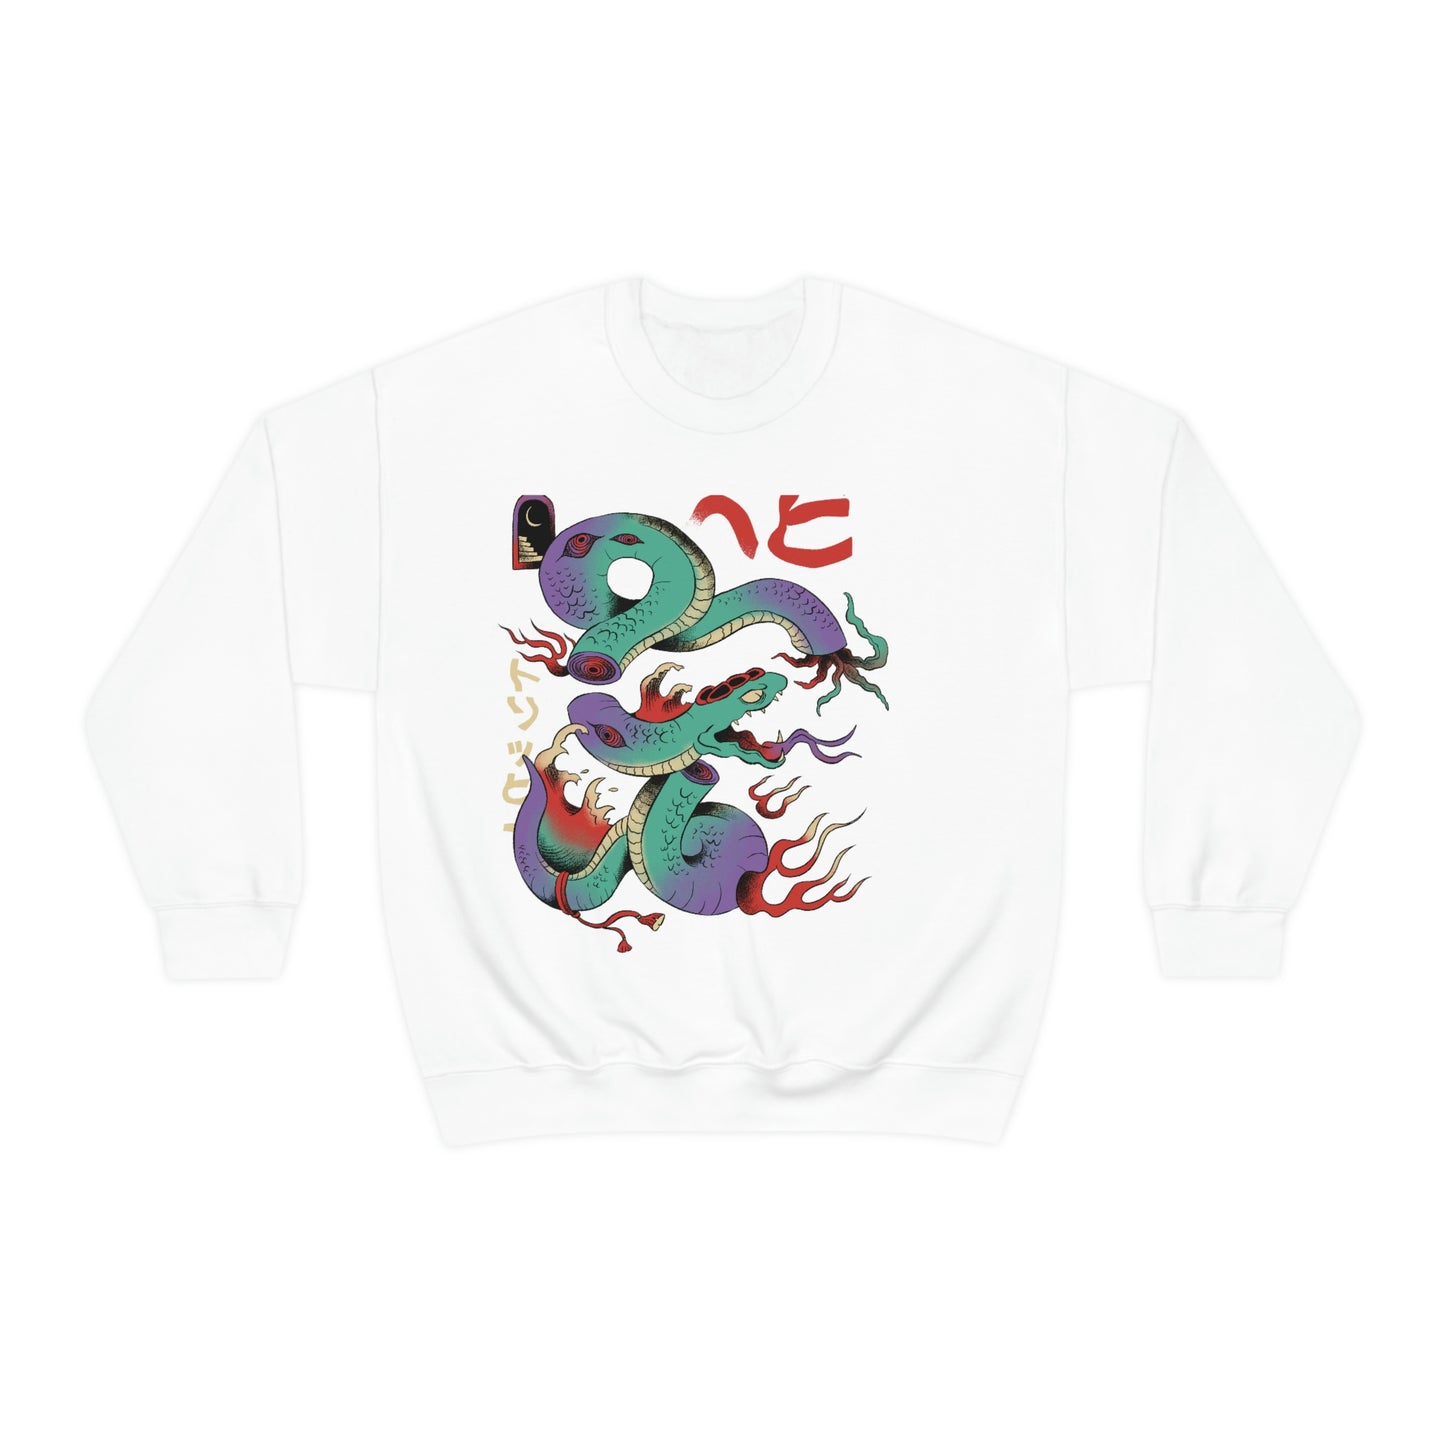 Indie Japanese Art, Japan Streeetwear Retro, Japanese Aesthetic Sweatshirt